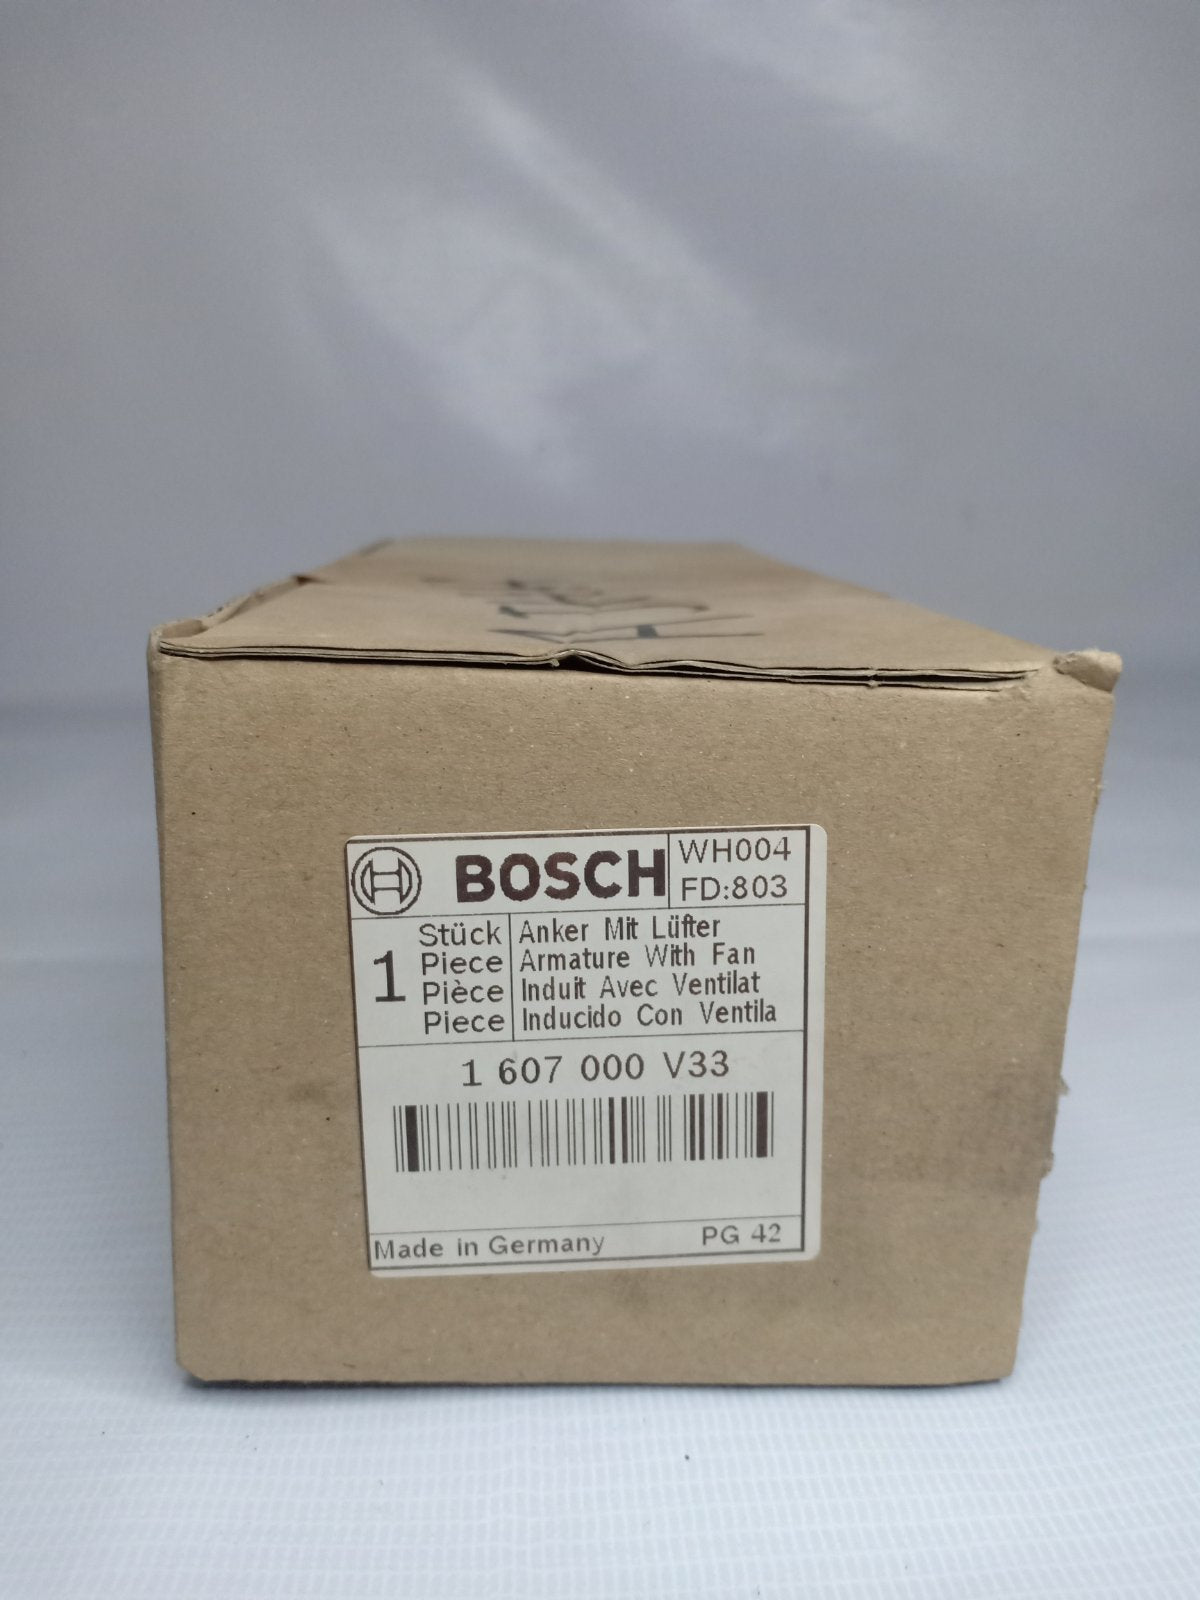 Bosch 1-607-000-V33 Armature for GWS 12-25 CI & GWS 13-125 CI Angle Grinder